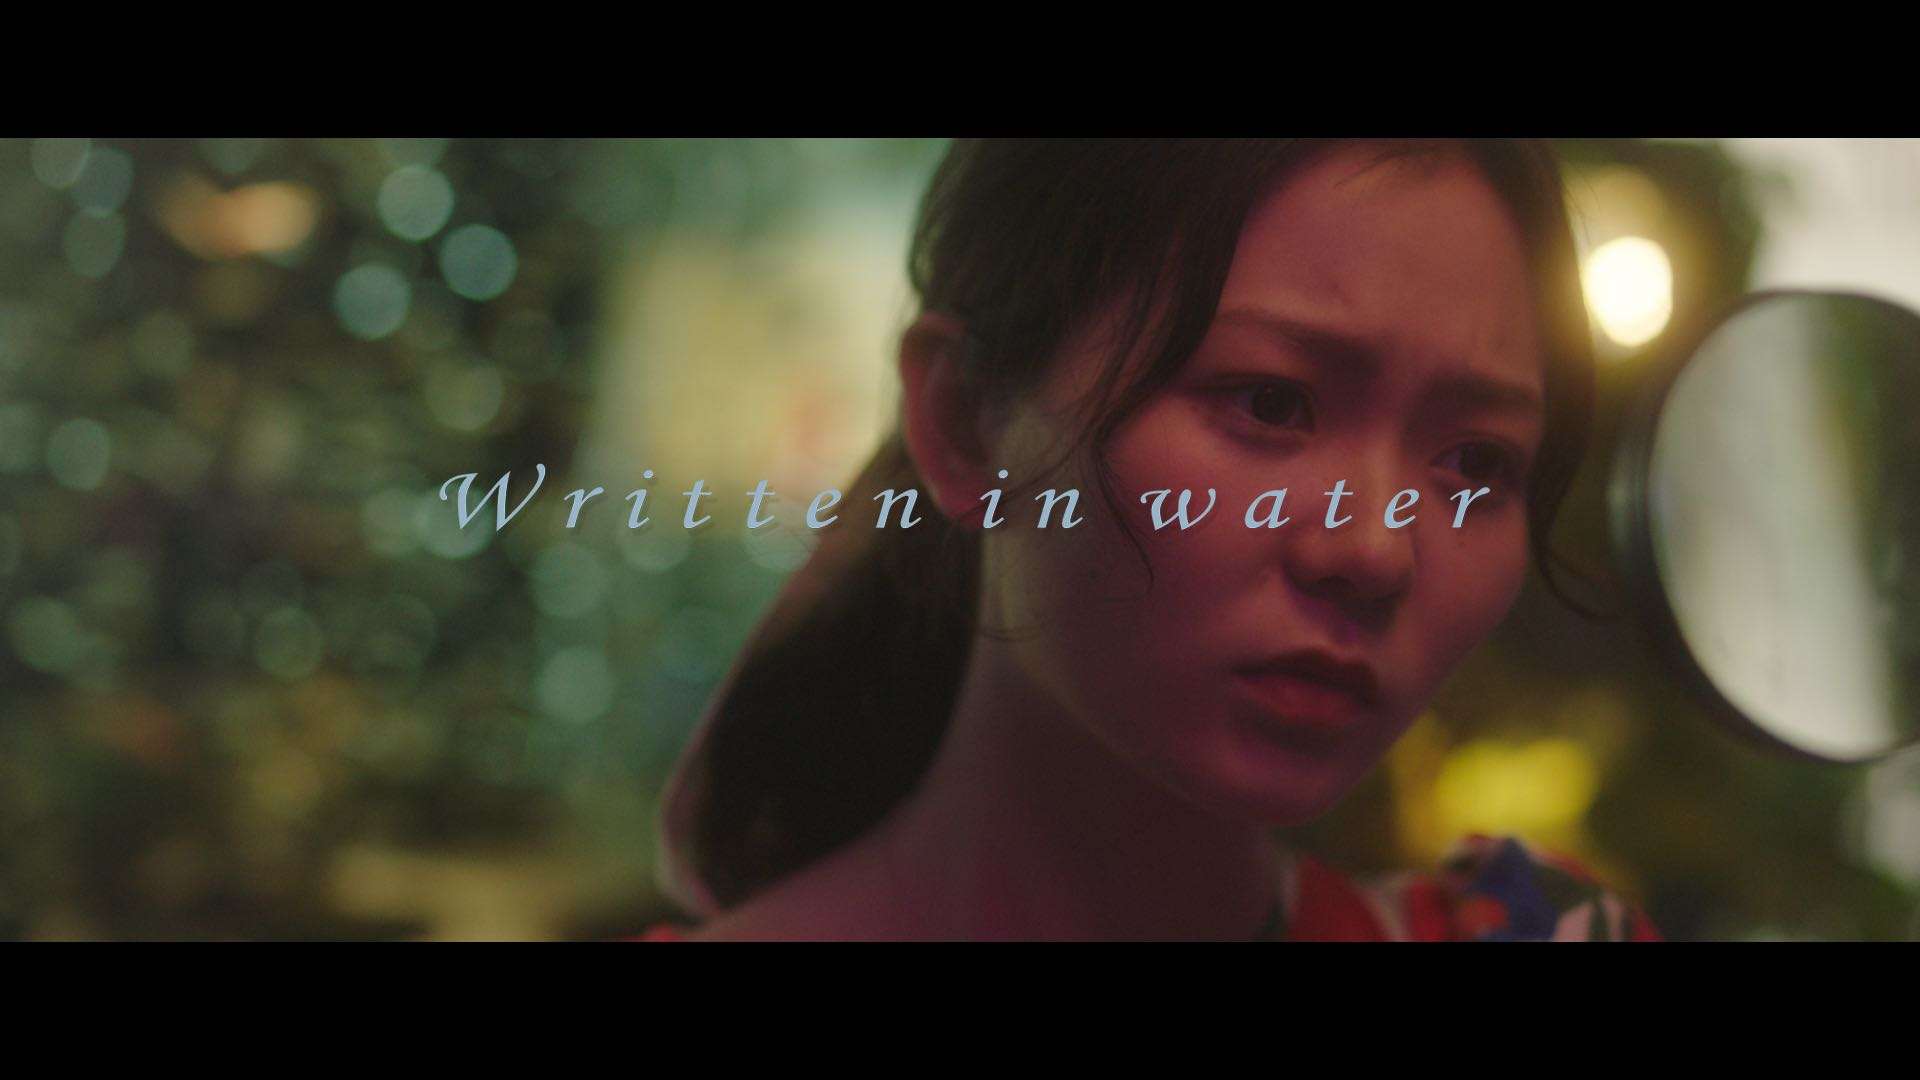 Written in water